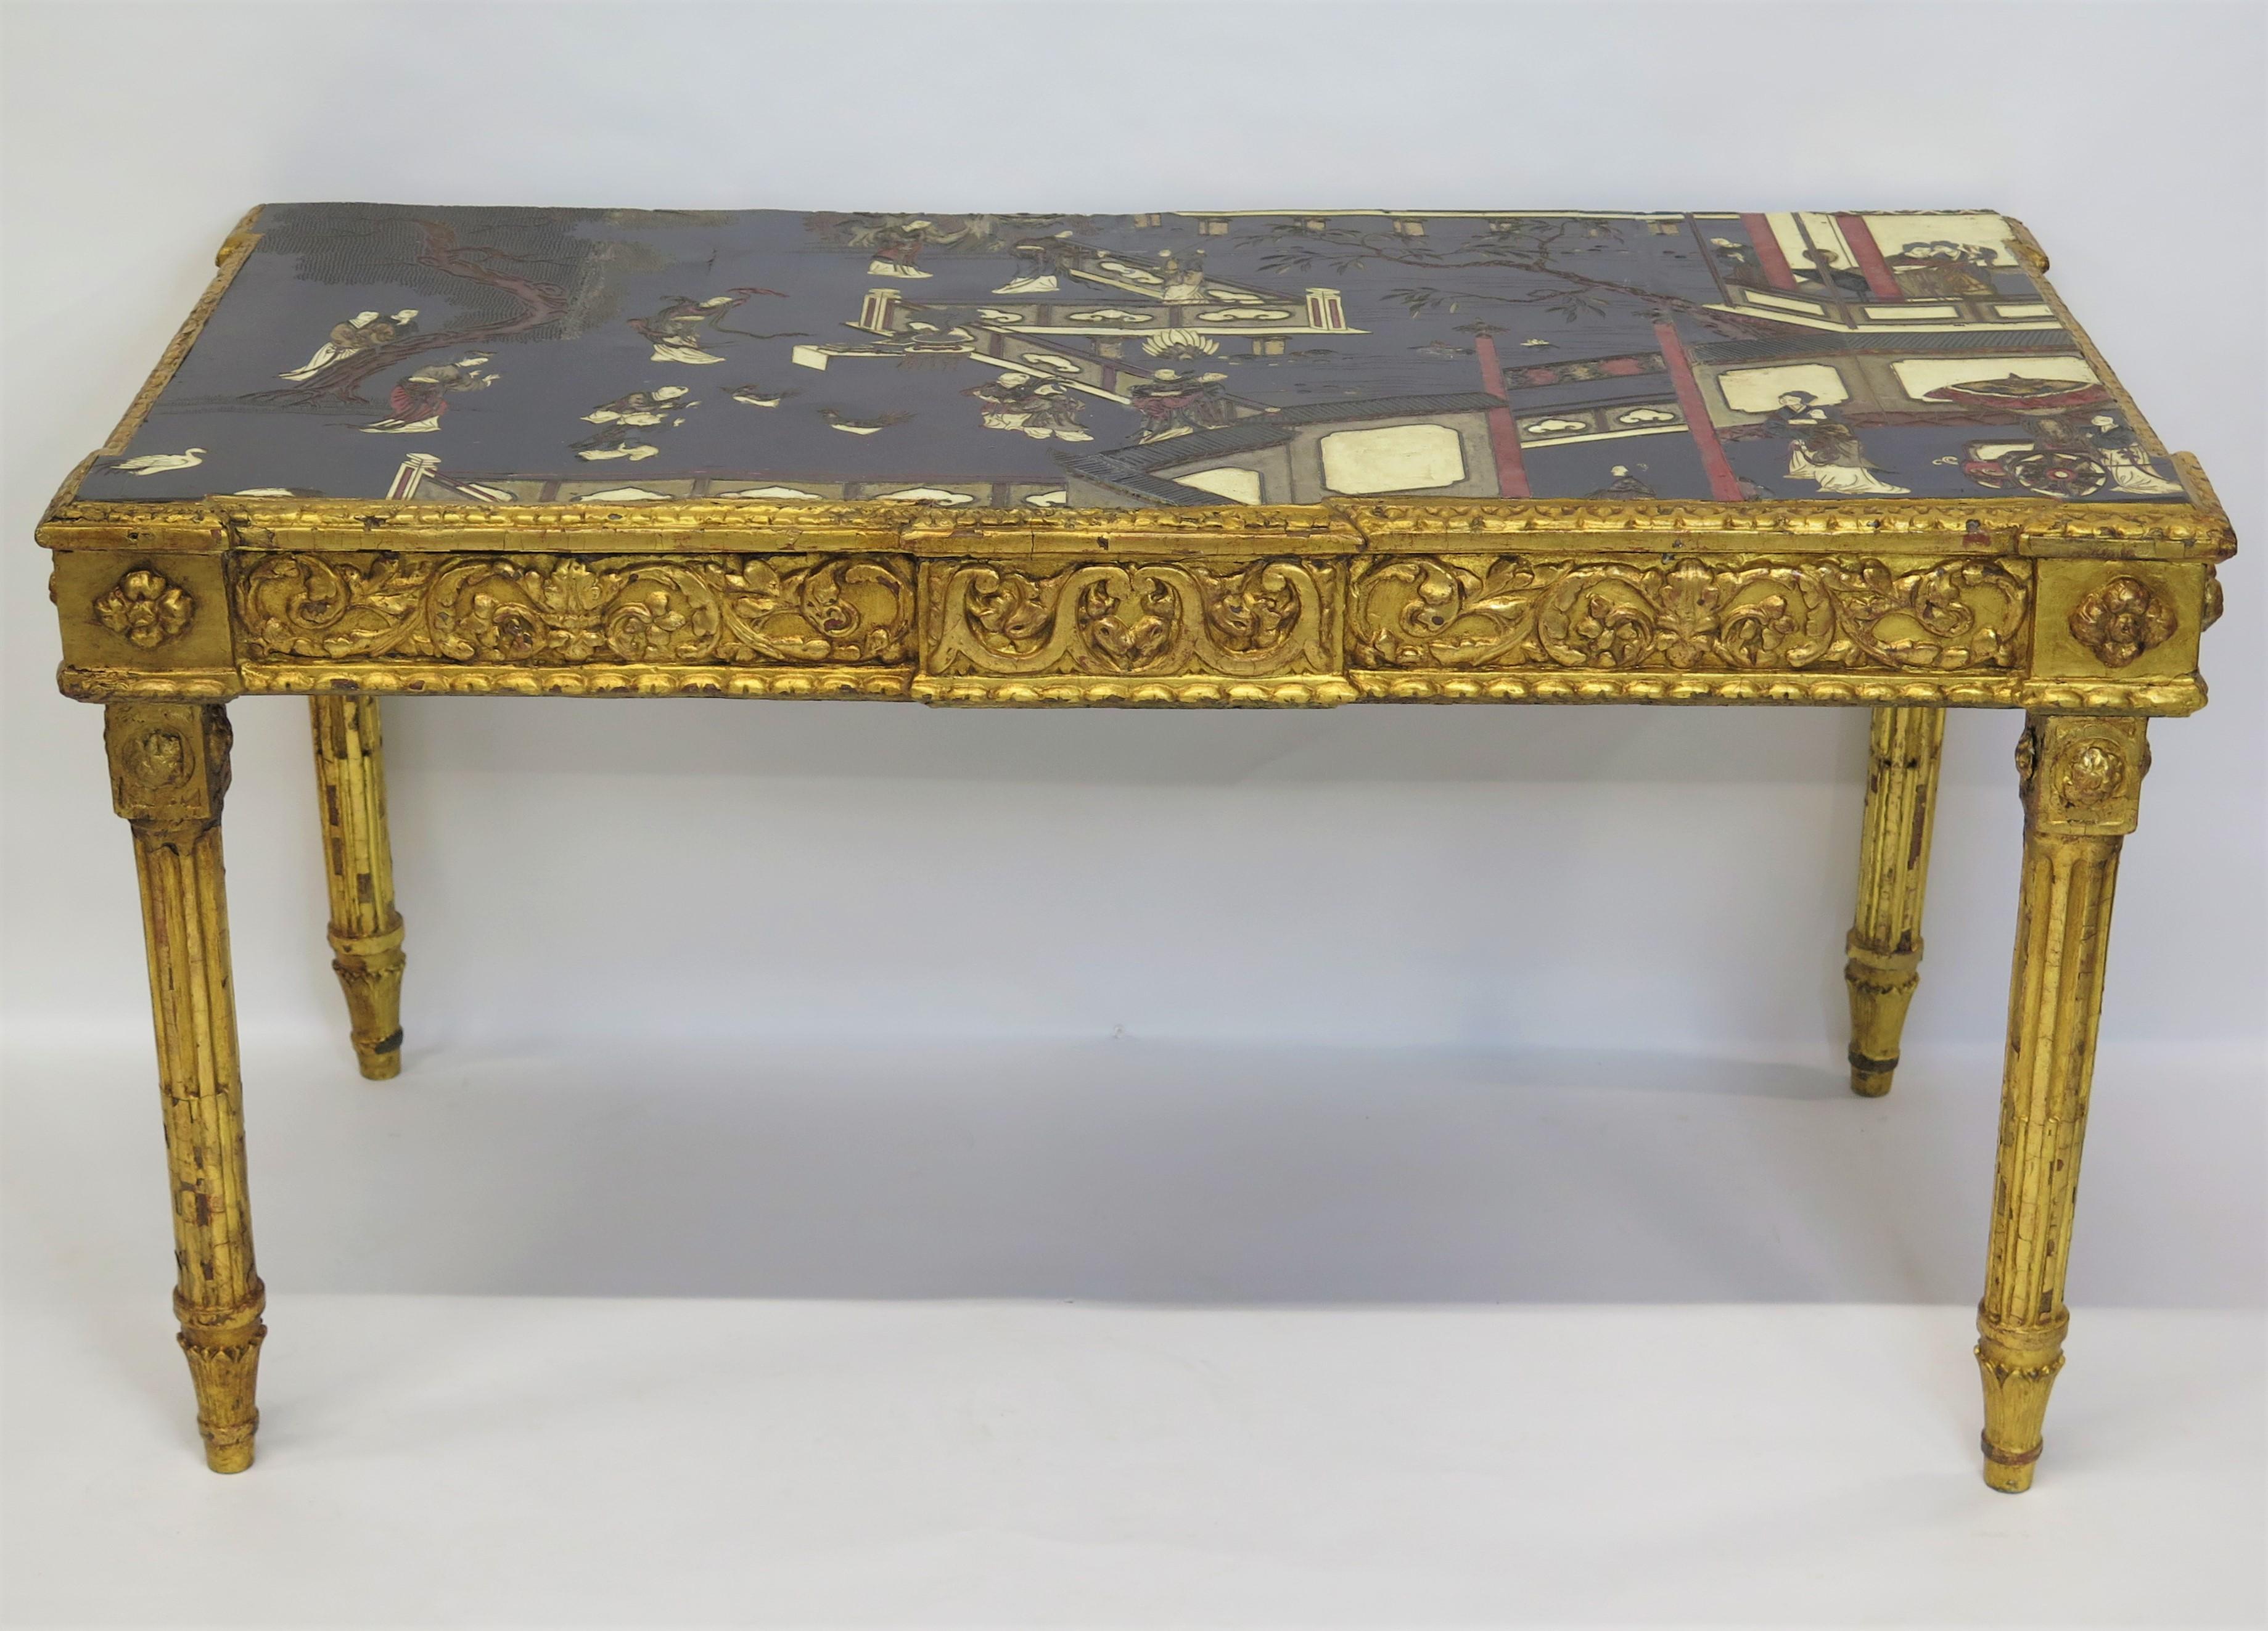 une table console Louis XVI très dramatique, principalement or et noir, avec plateau Coromandel chinois, le plateau est une section d'un écran Coromandel) en noir avec rouge, vert, et blanc / crème, cadre en bois doré sculpté, pieds cannelés tournés